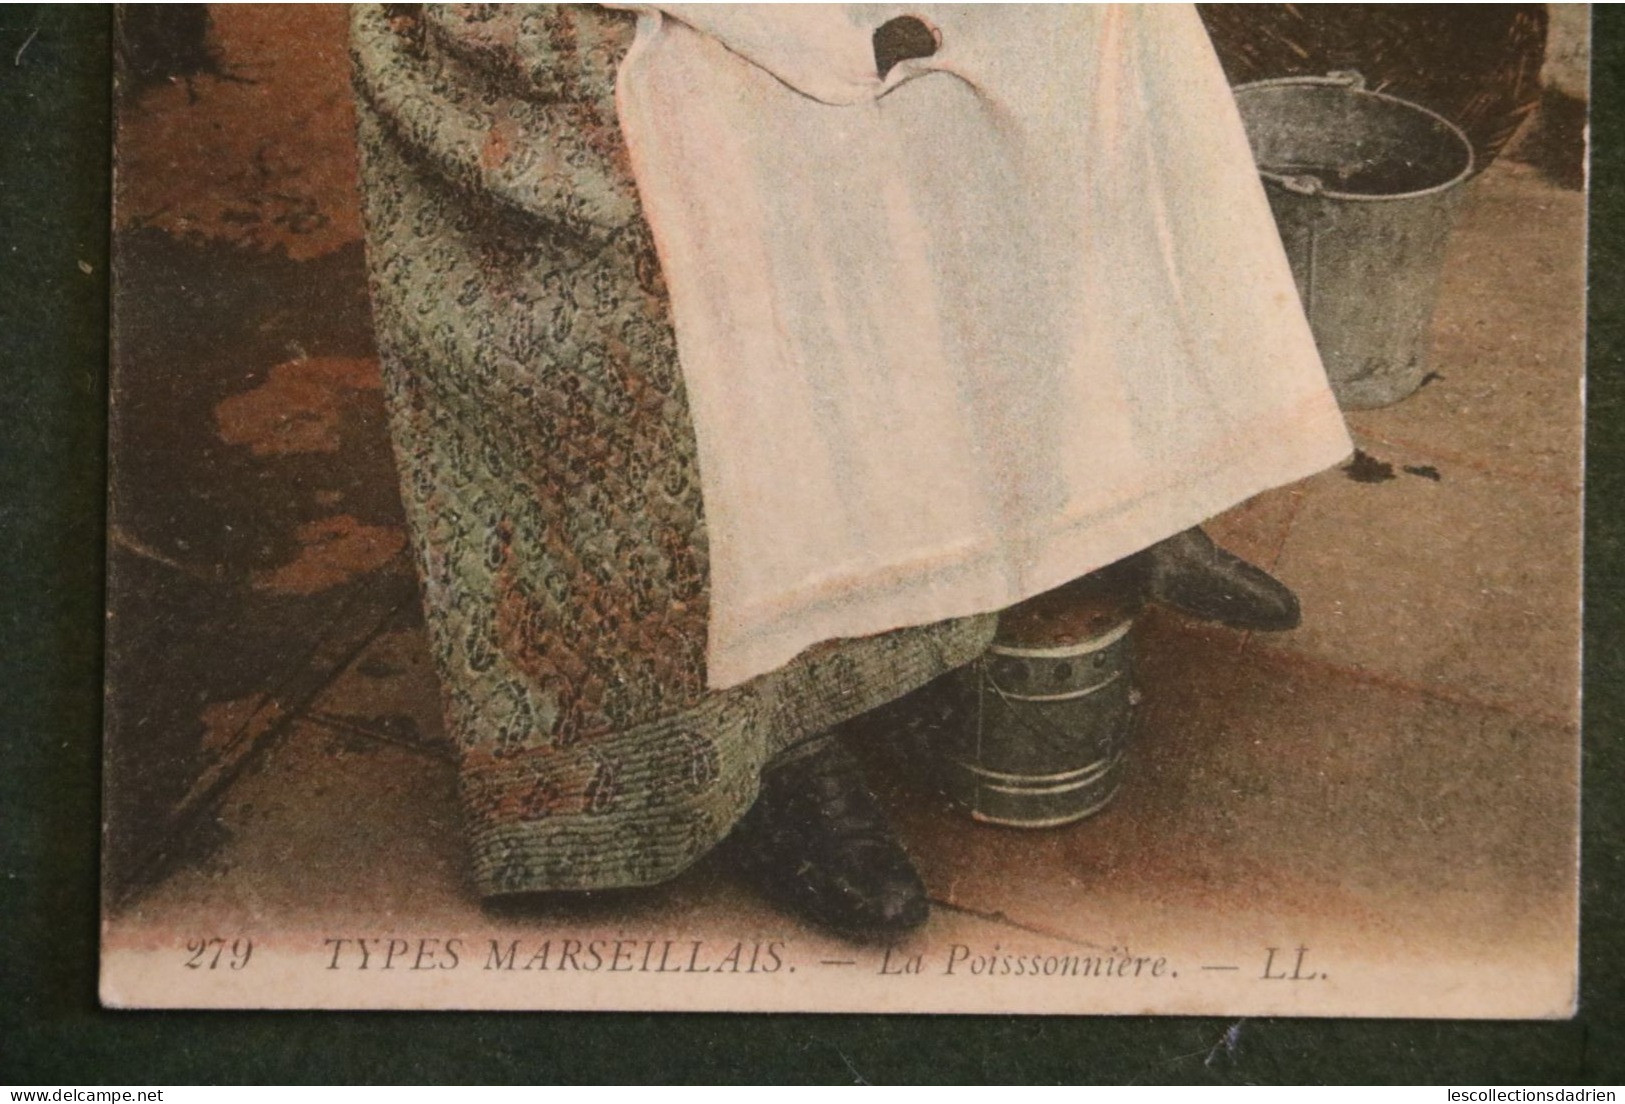 Carte postale - types marseillais  la poissonnière femme assise